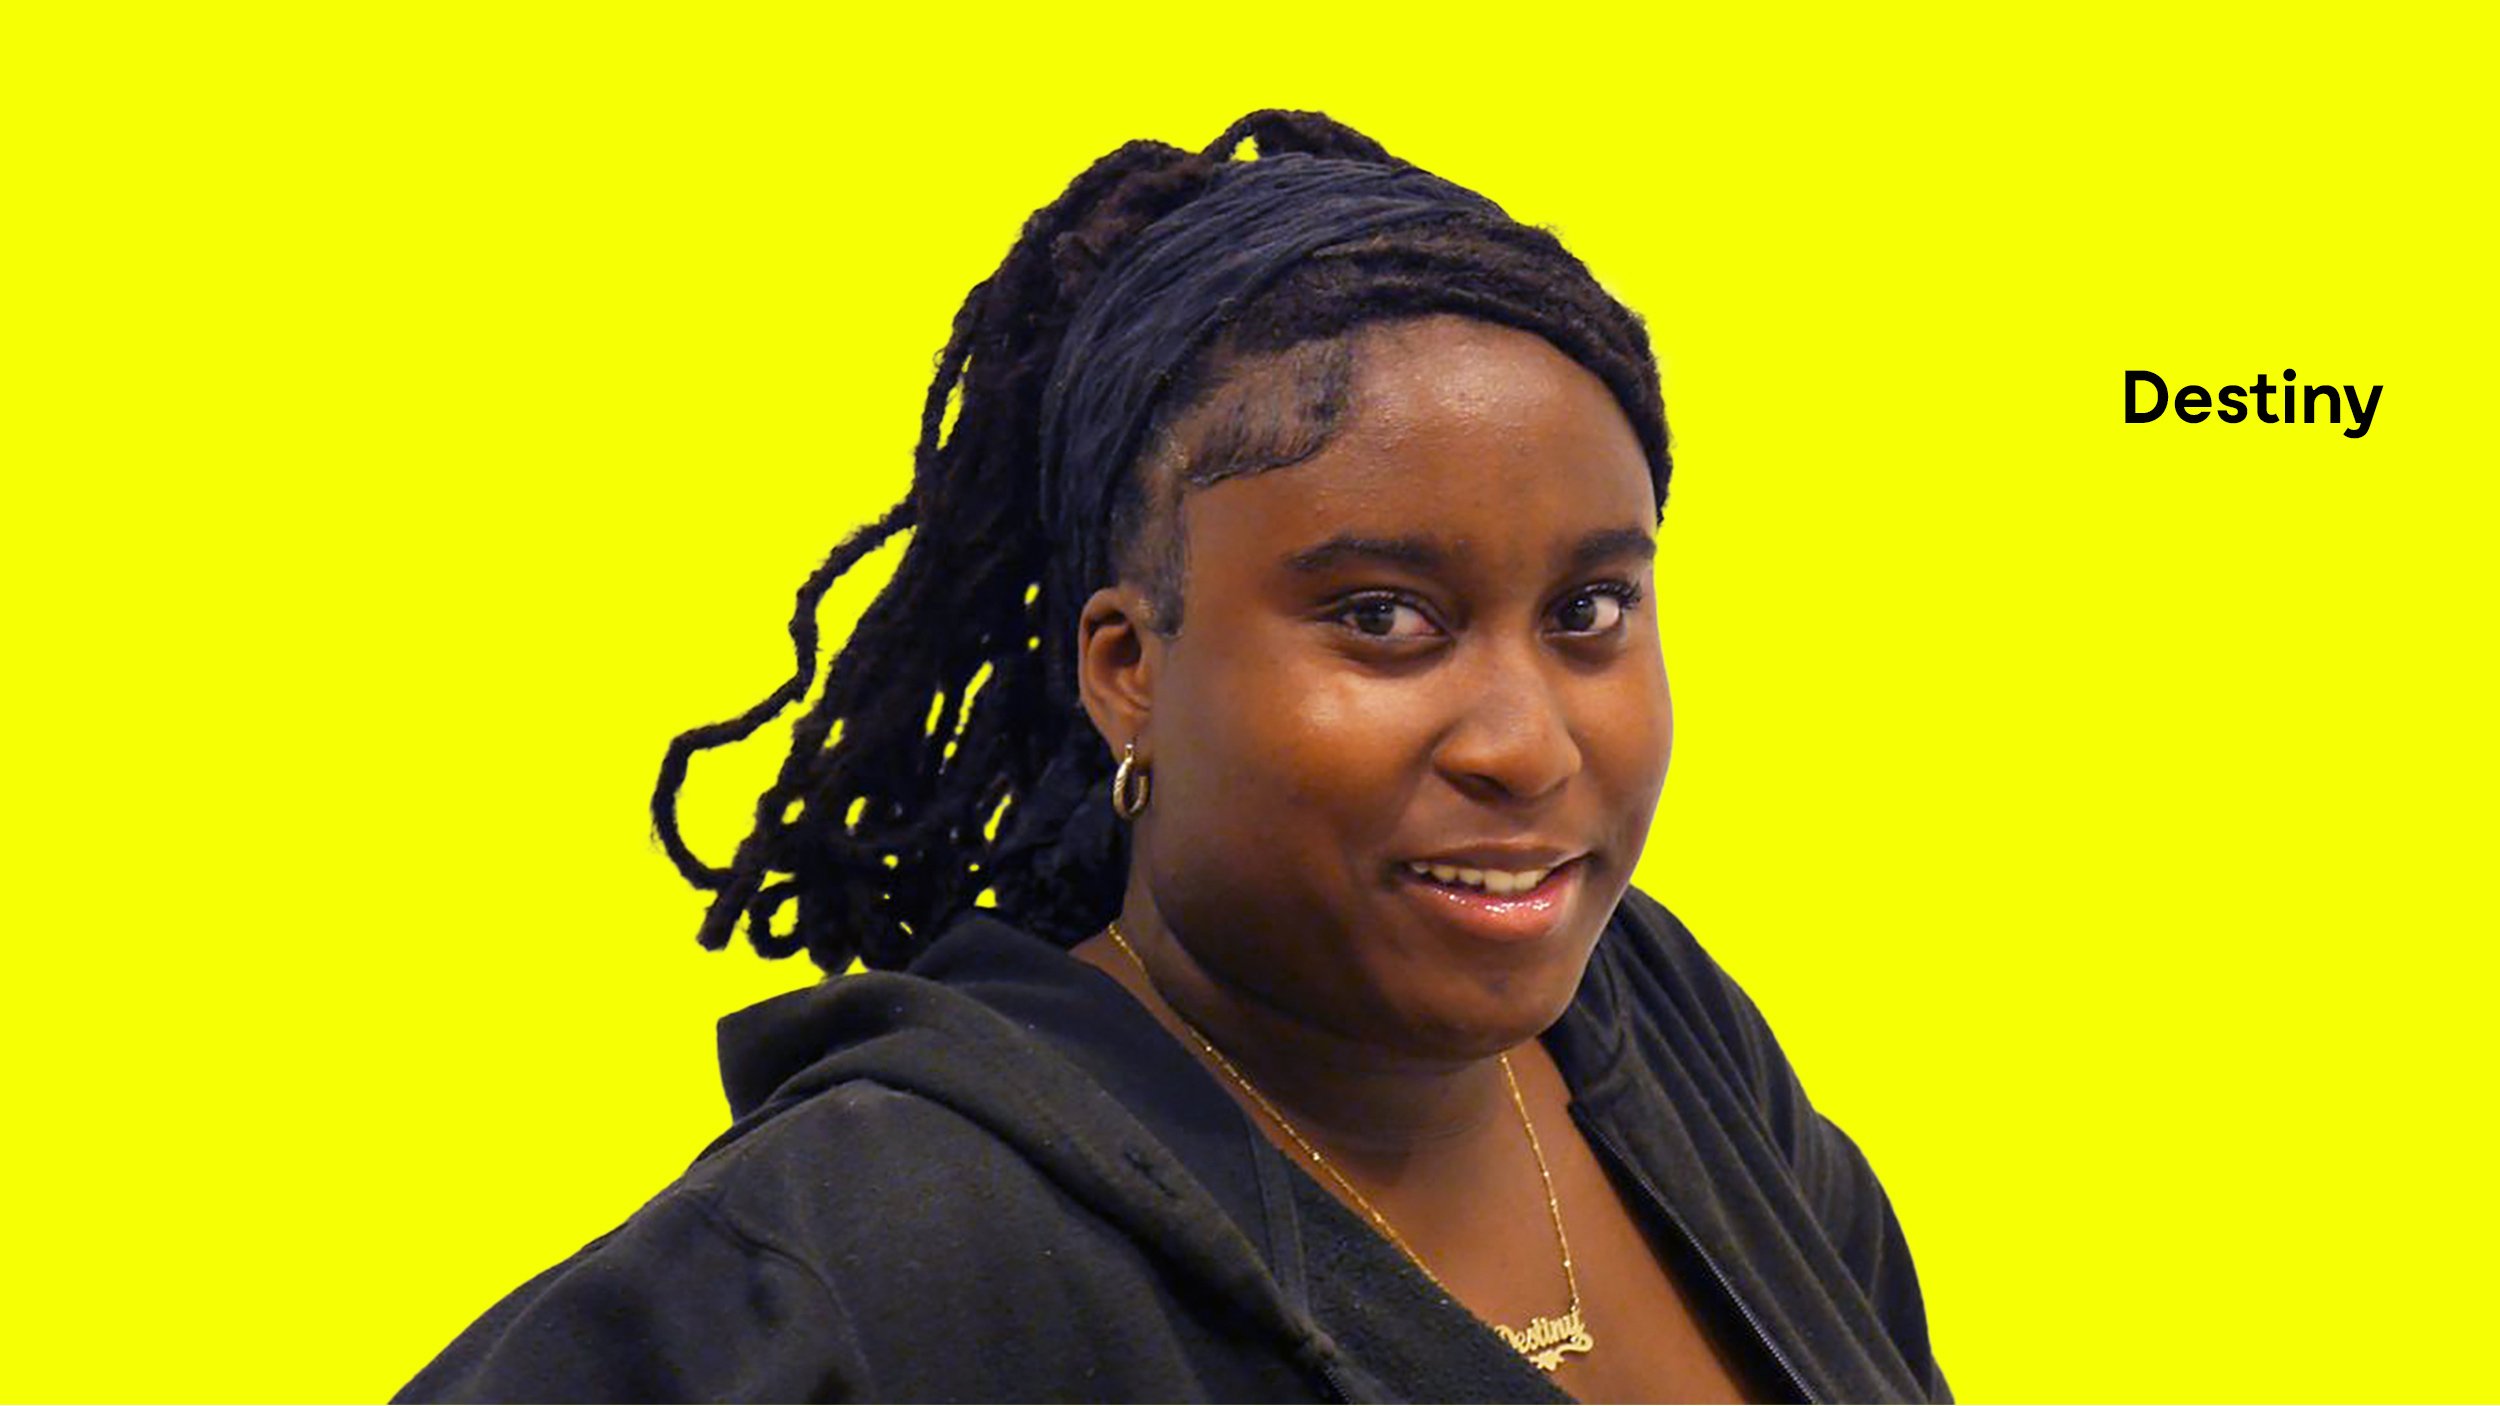  Destiny Gbaniyi (née en 2009) est une élève de l'école secondaire La Voie dans l'arrondissement de Côte-des-Neiges. Elle aspire à devenir avocate le jour et artiste sculpteure le soir. Pour l'instant, Destiny se concentre à continuer à gagner ses co